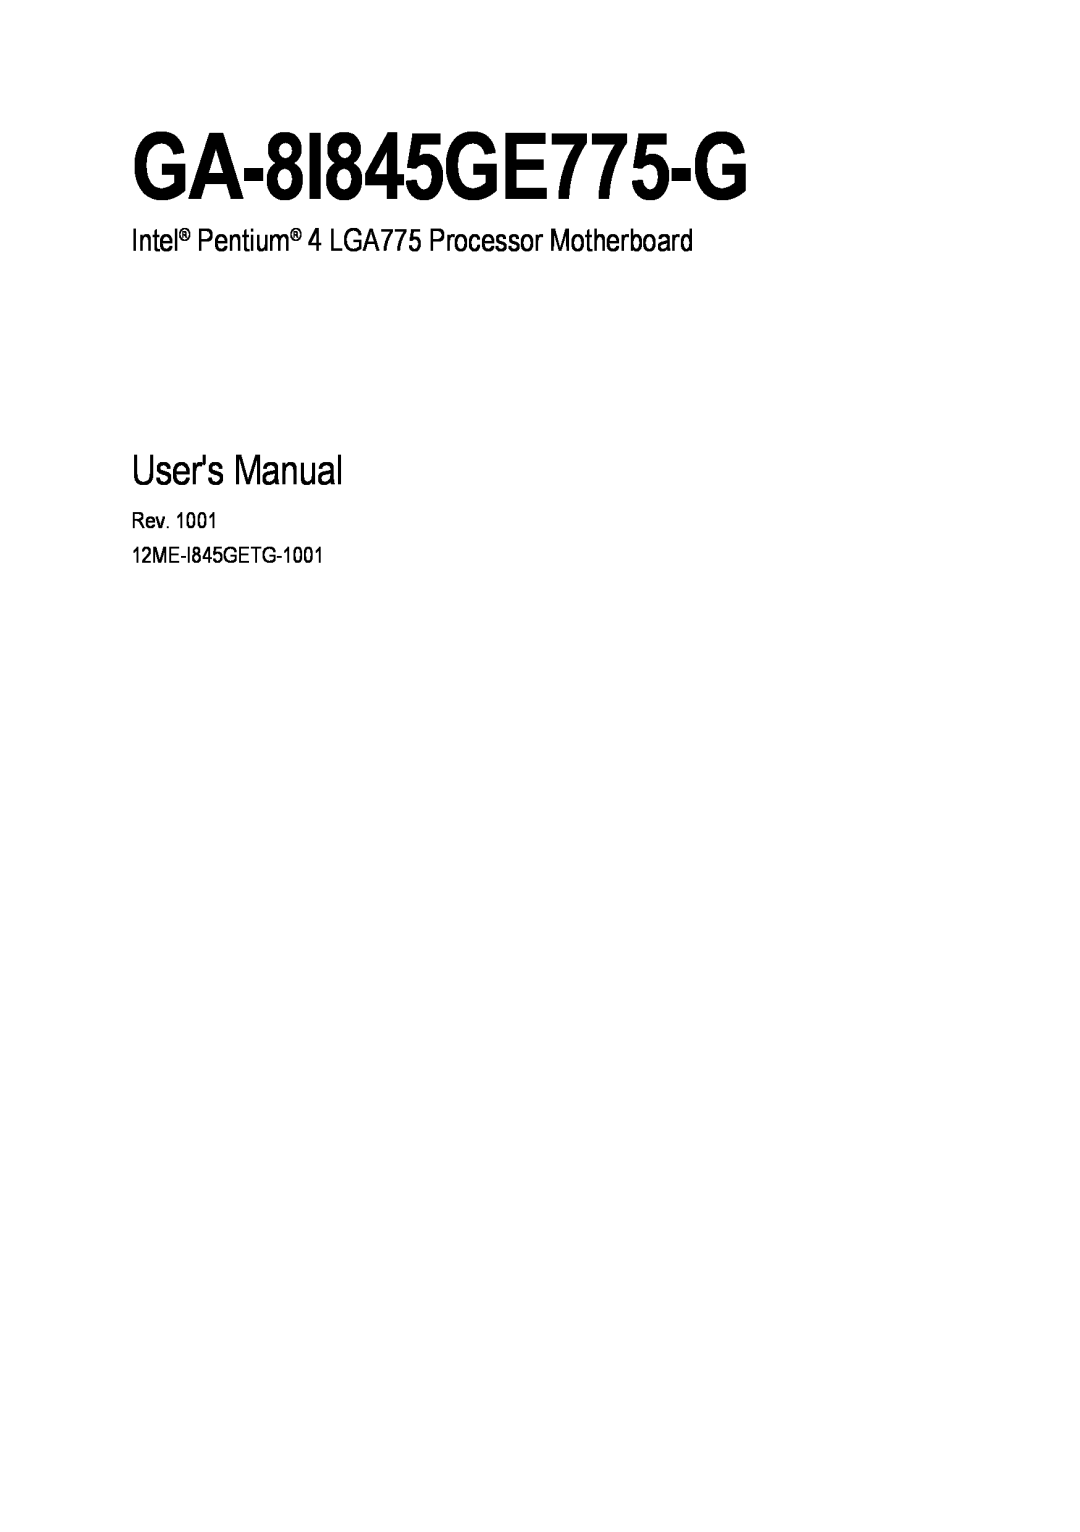 Gigabyte GA-8I845GE775-G user manual Users Manual, Intel Pentium 4 LGA775 Processor Motherboard 